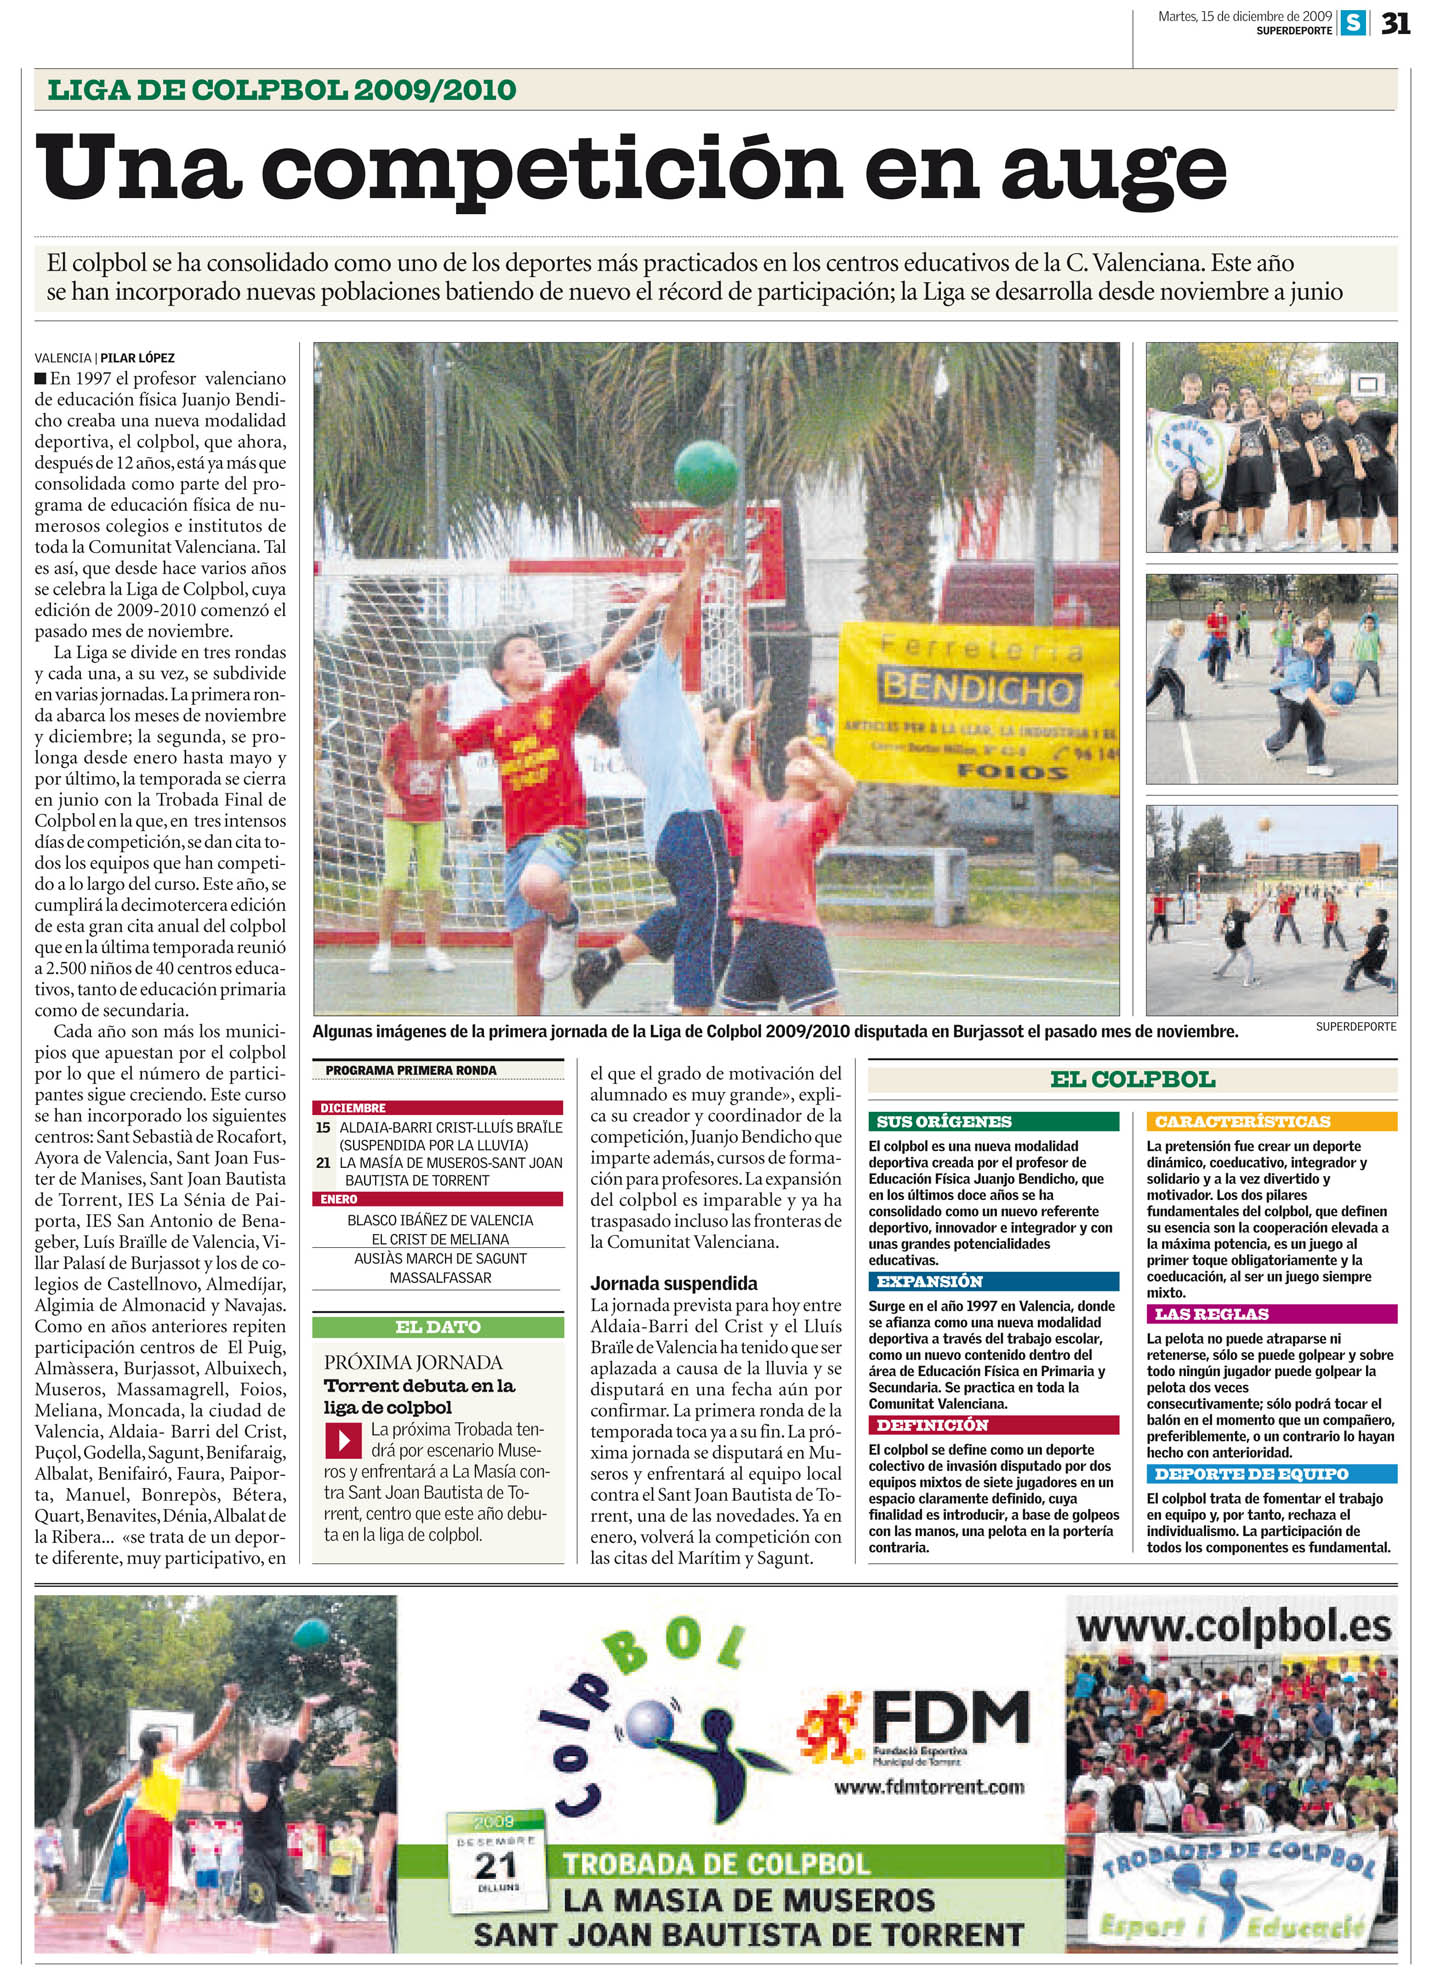 El periódico SUPERDEPORTE informa sobre la Liga del Colpbol 2009/2010